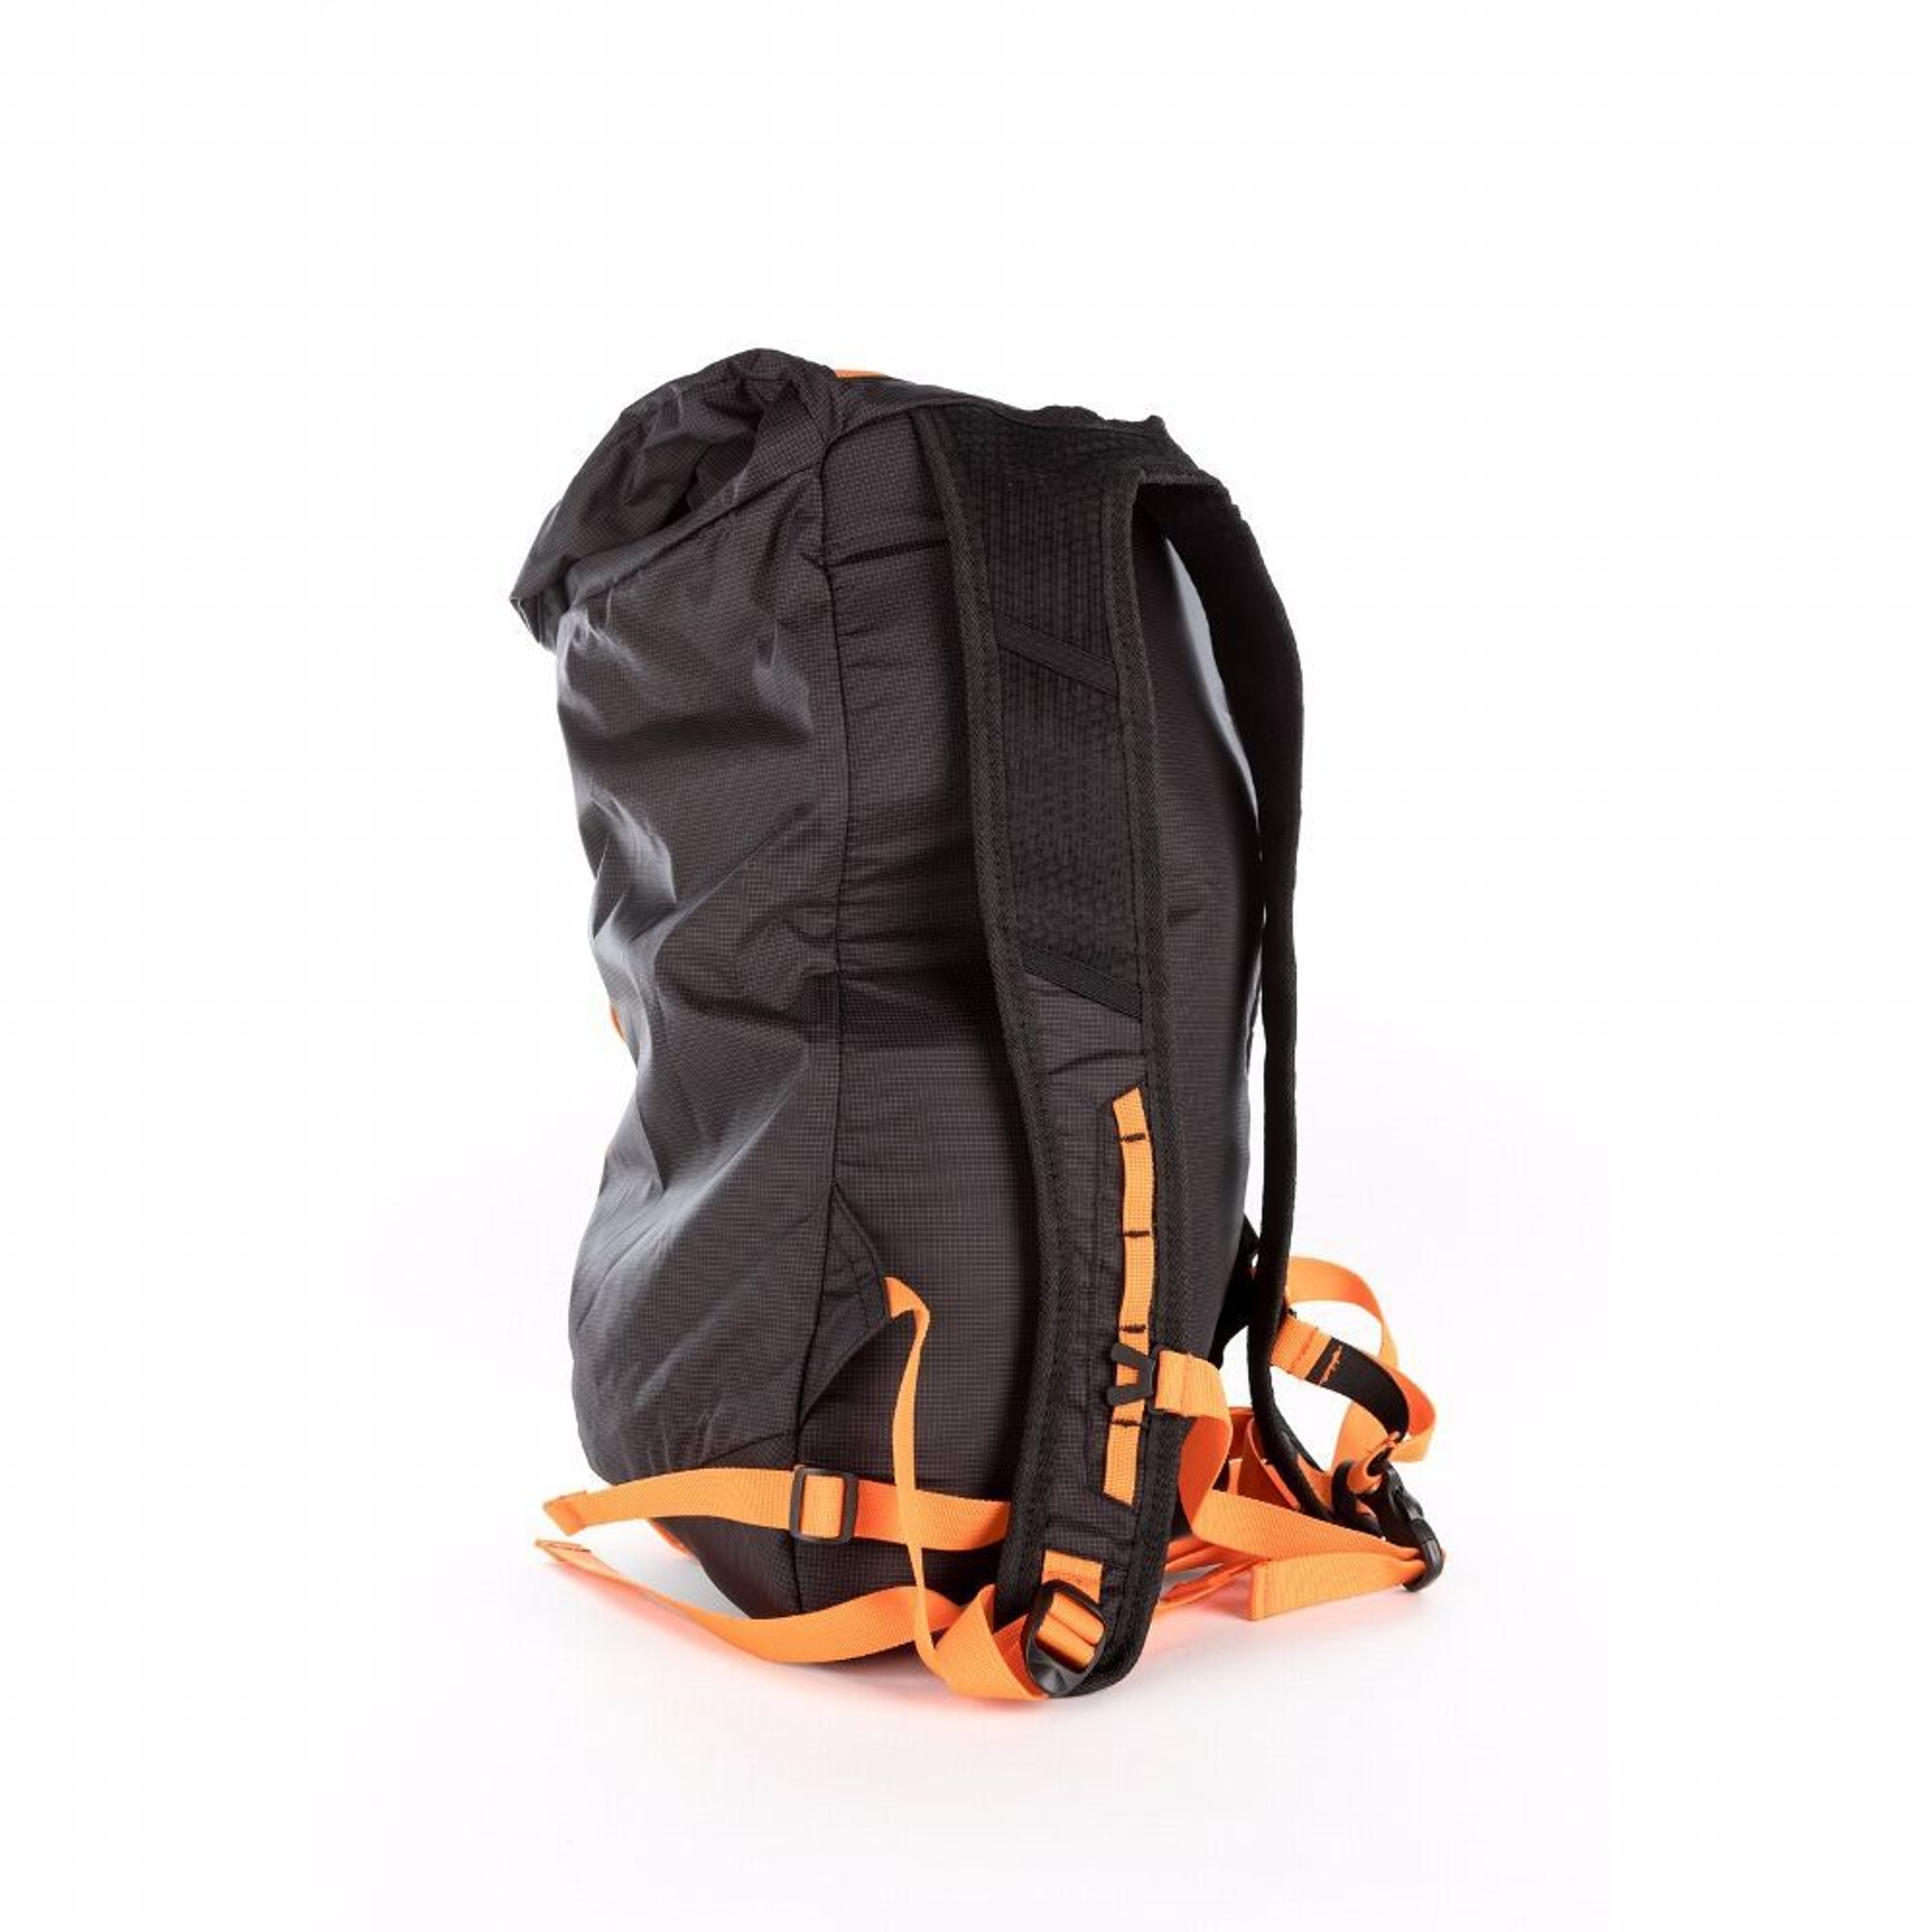 Retki ultraleichter Sport-Rucksack 25 Liter Klettern oder Trailrunning